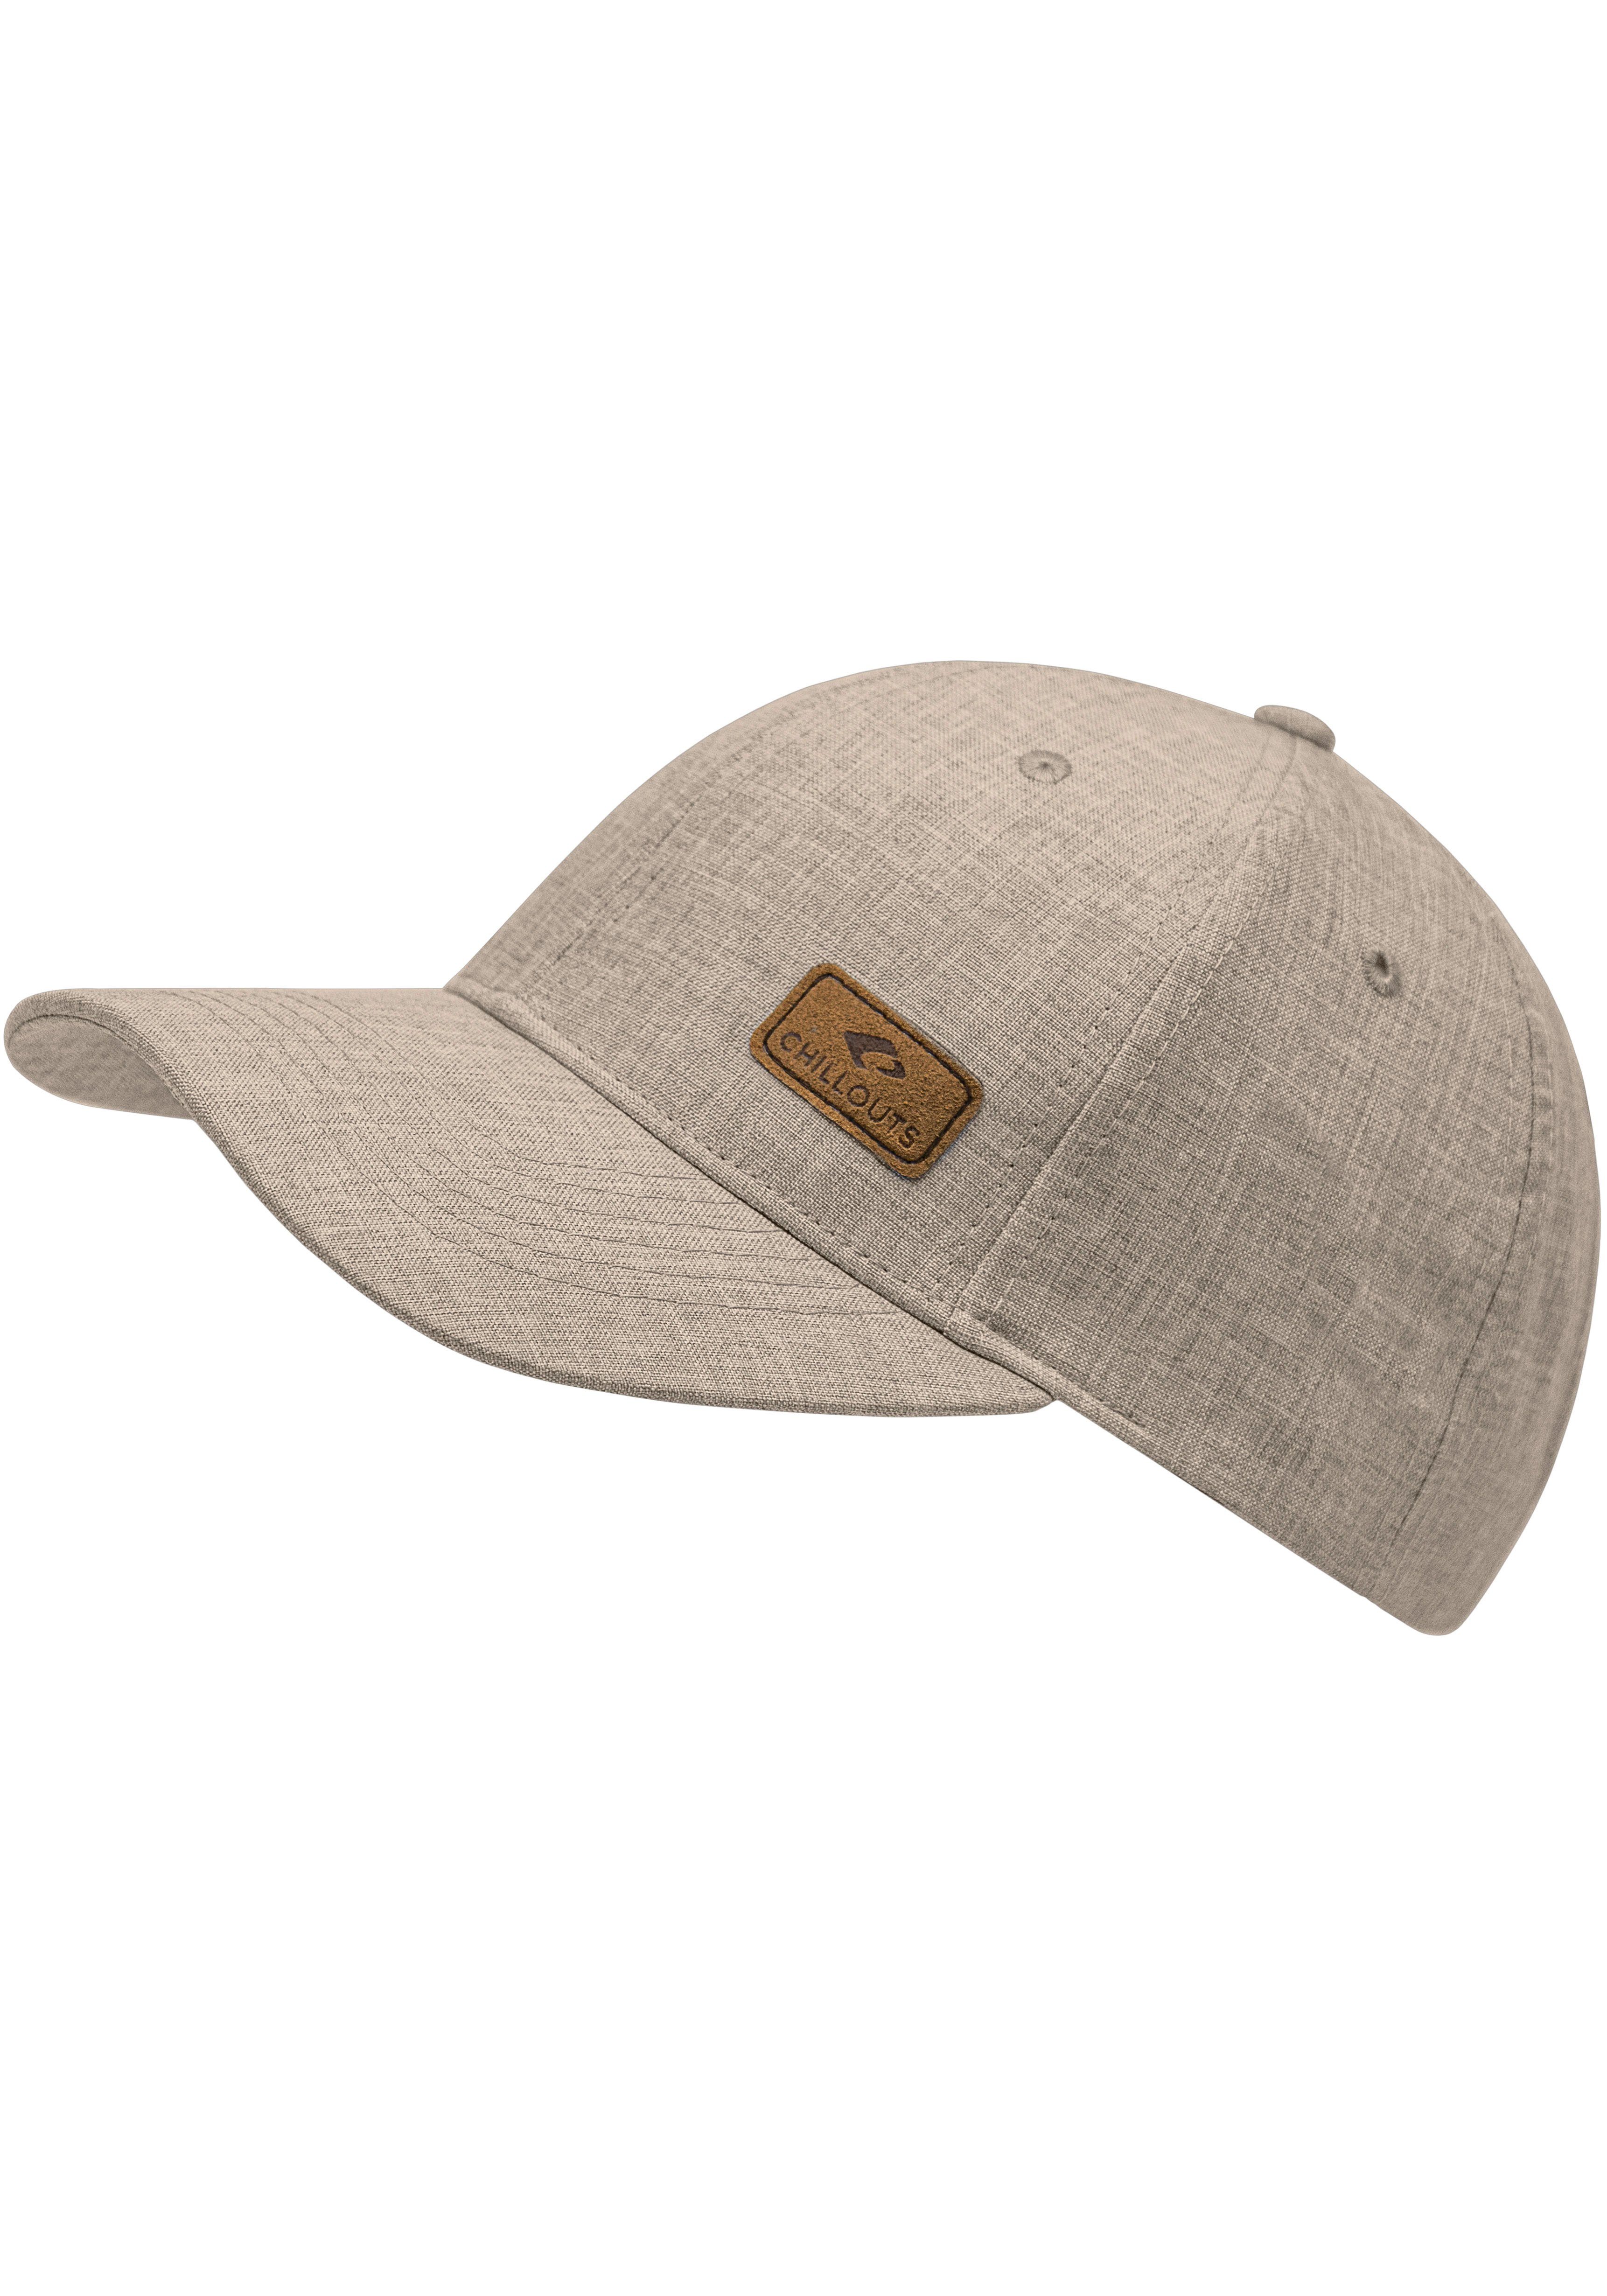 [Zuverlässiger Inlandsversand] Amadora in Hat Baseball Cap beige verstellbar Optik, Size, chillouts melierter One